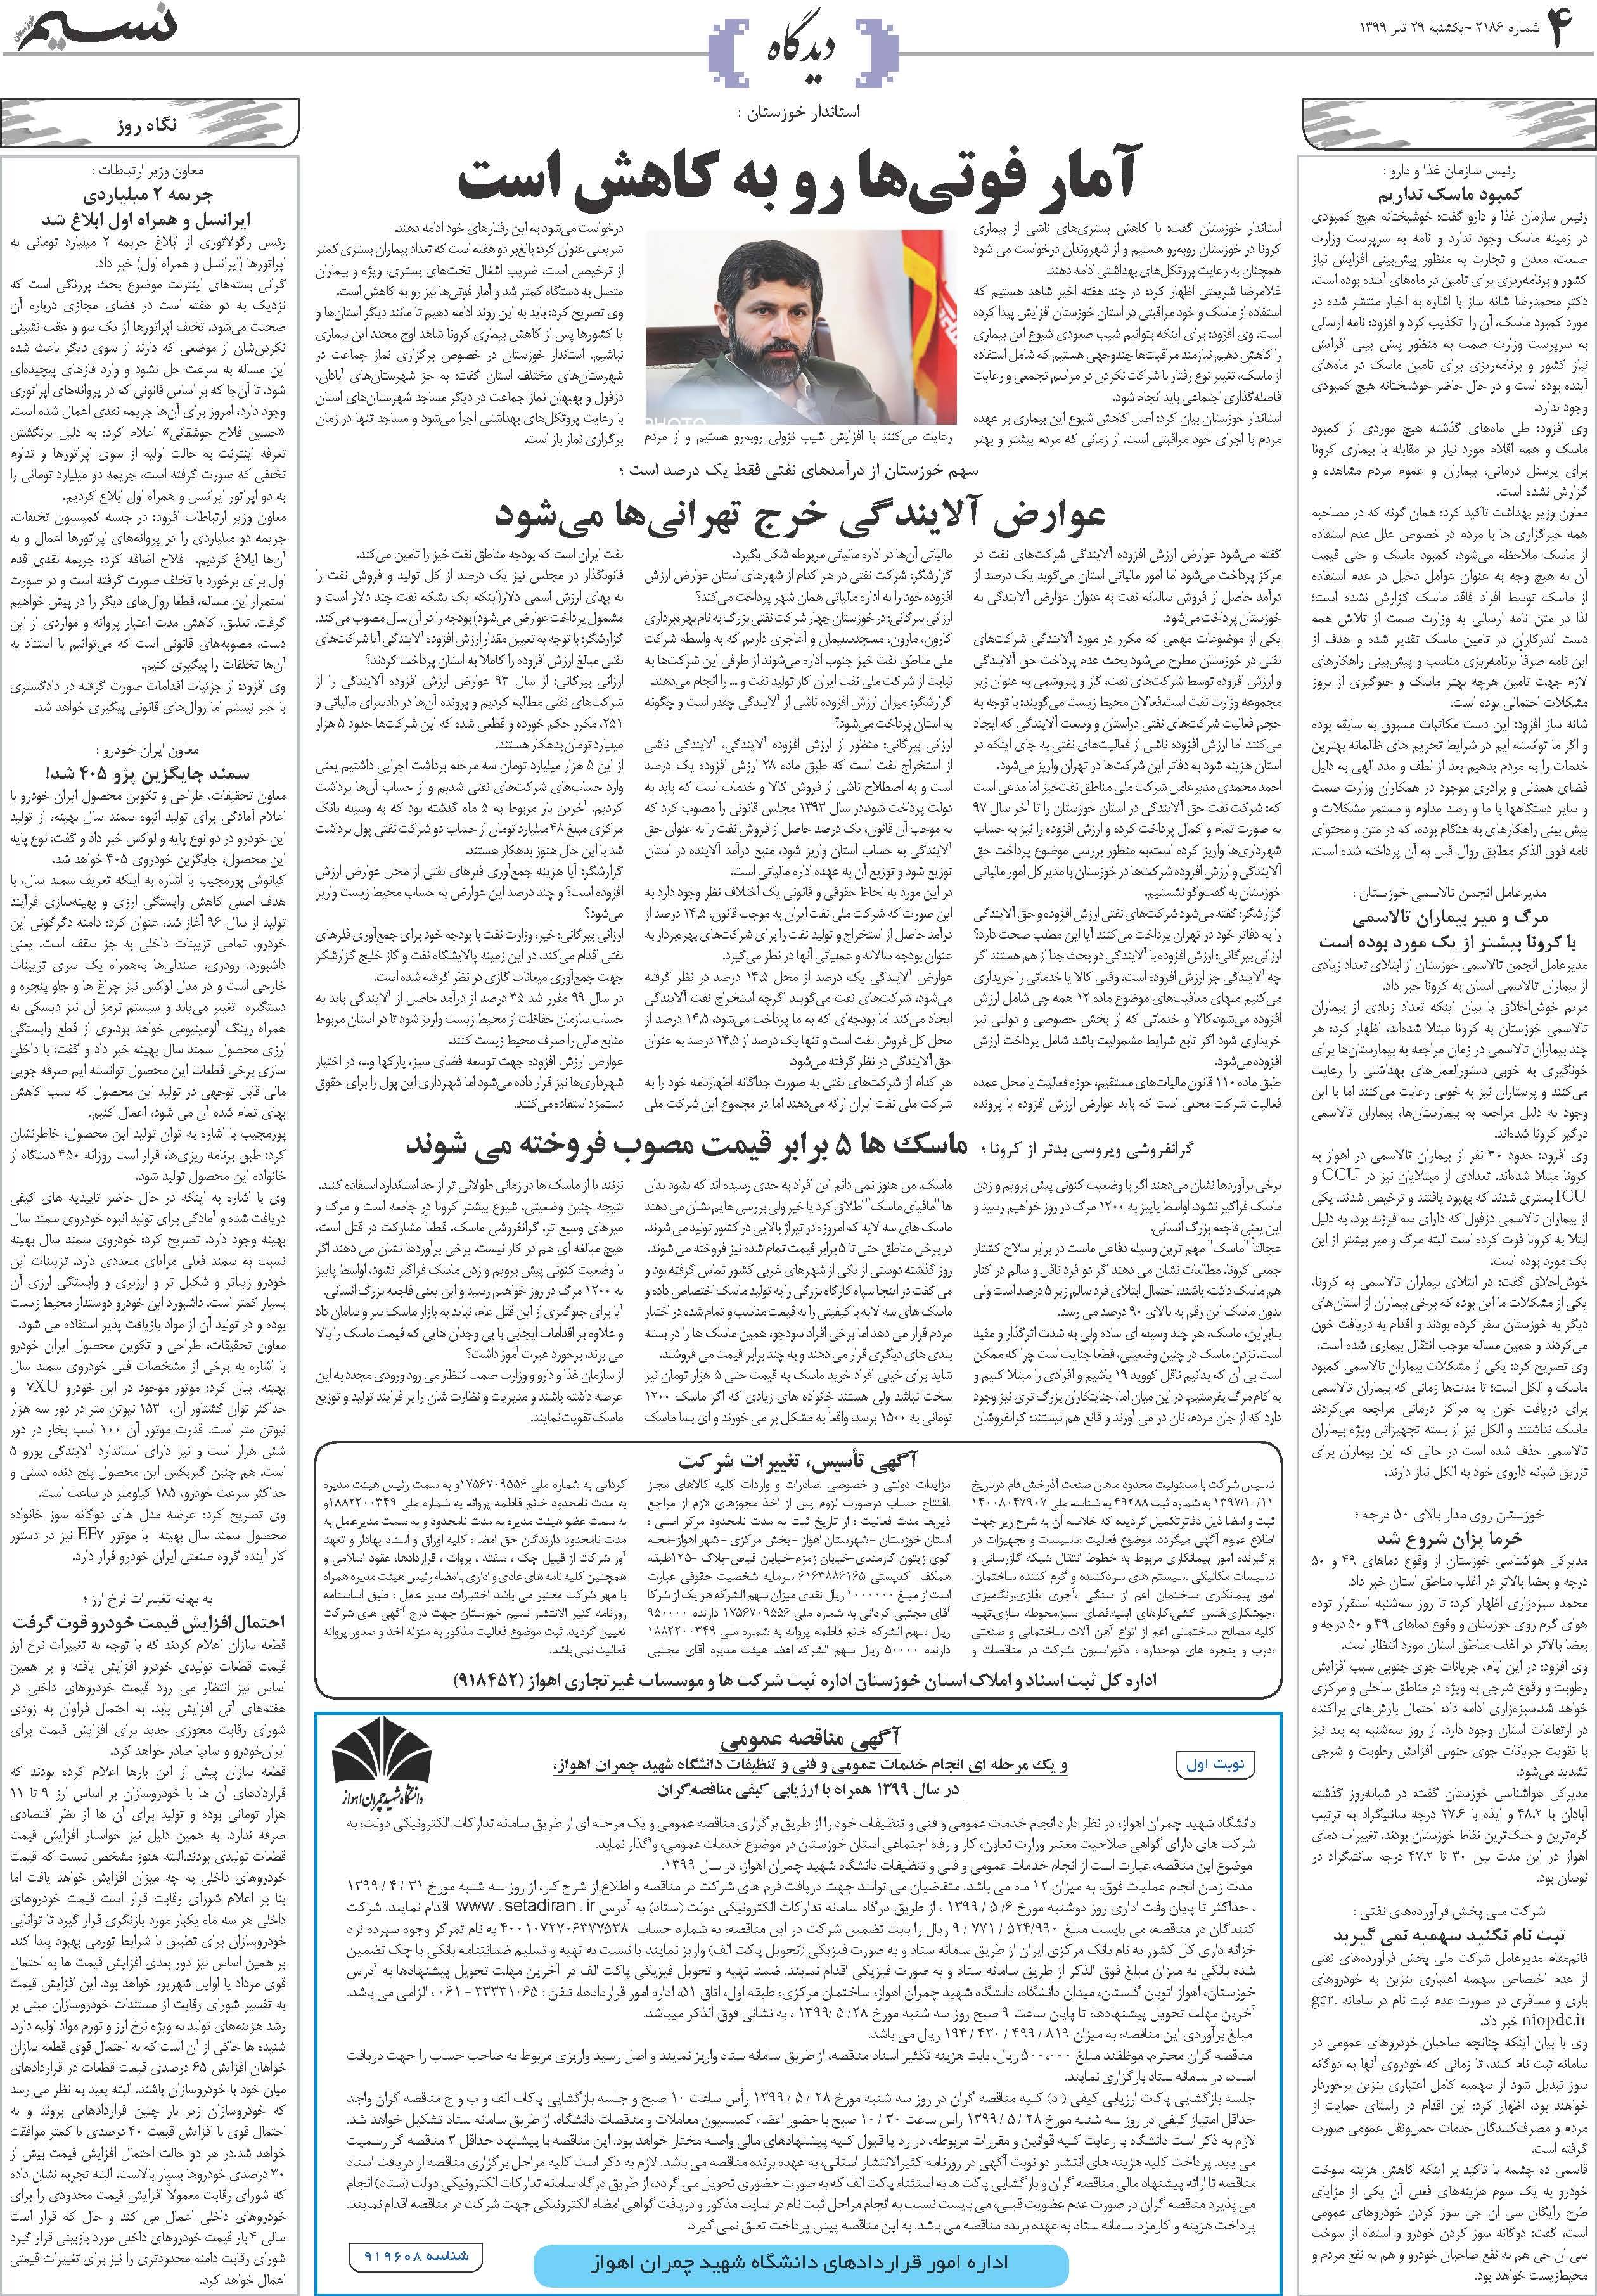 صفحه دیدگاه روزنامه نسیم شماره 2186